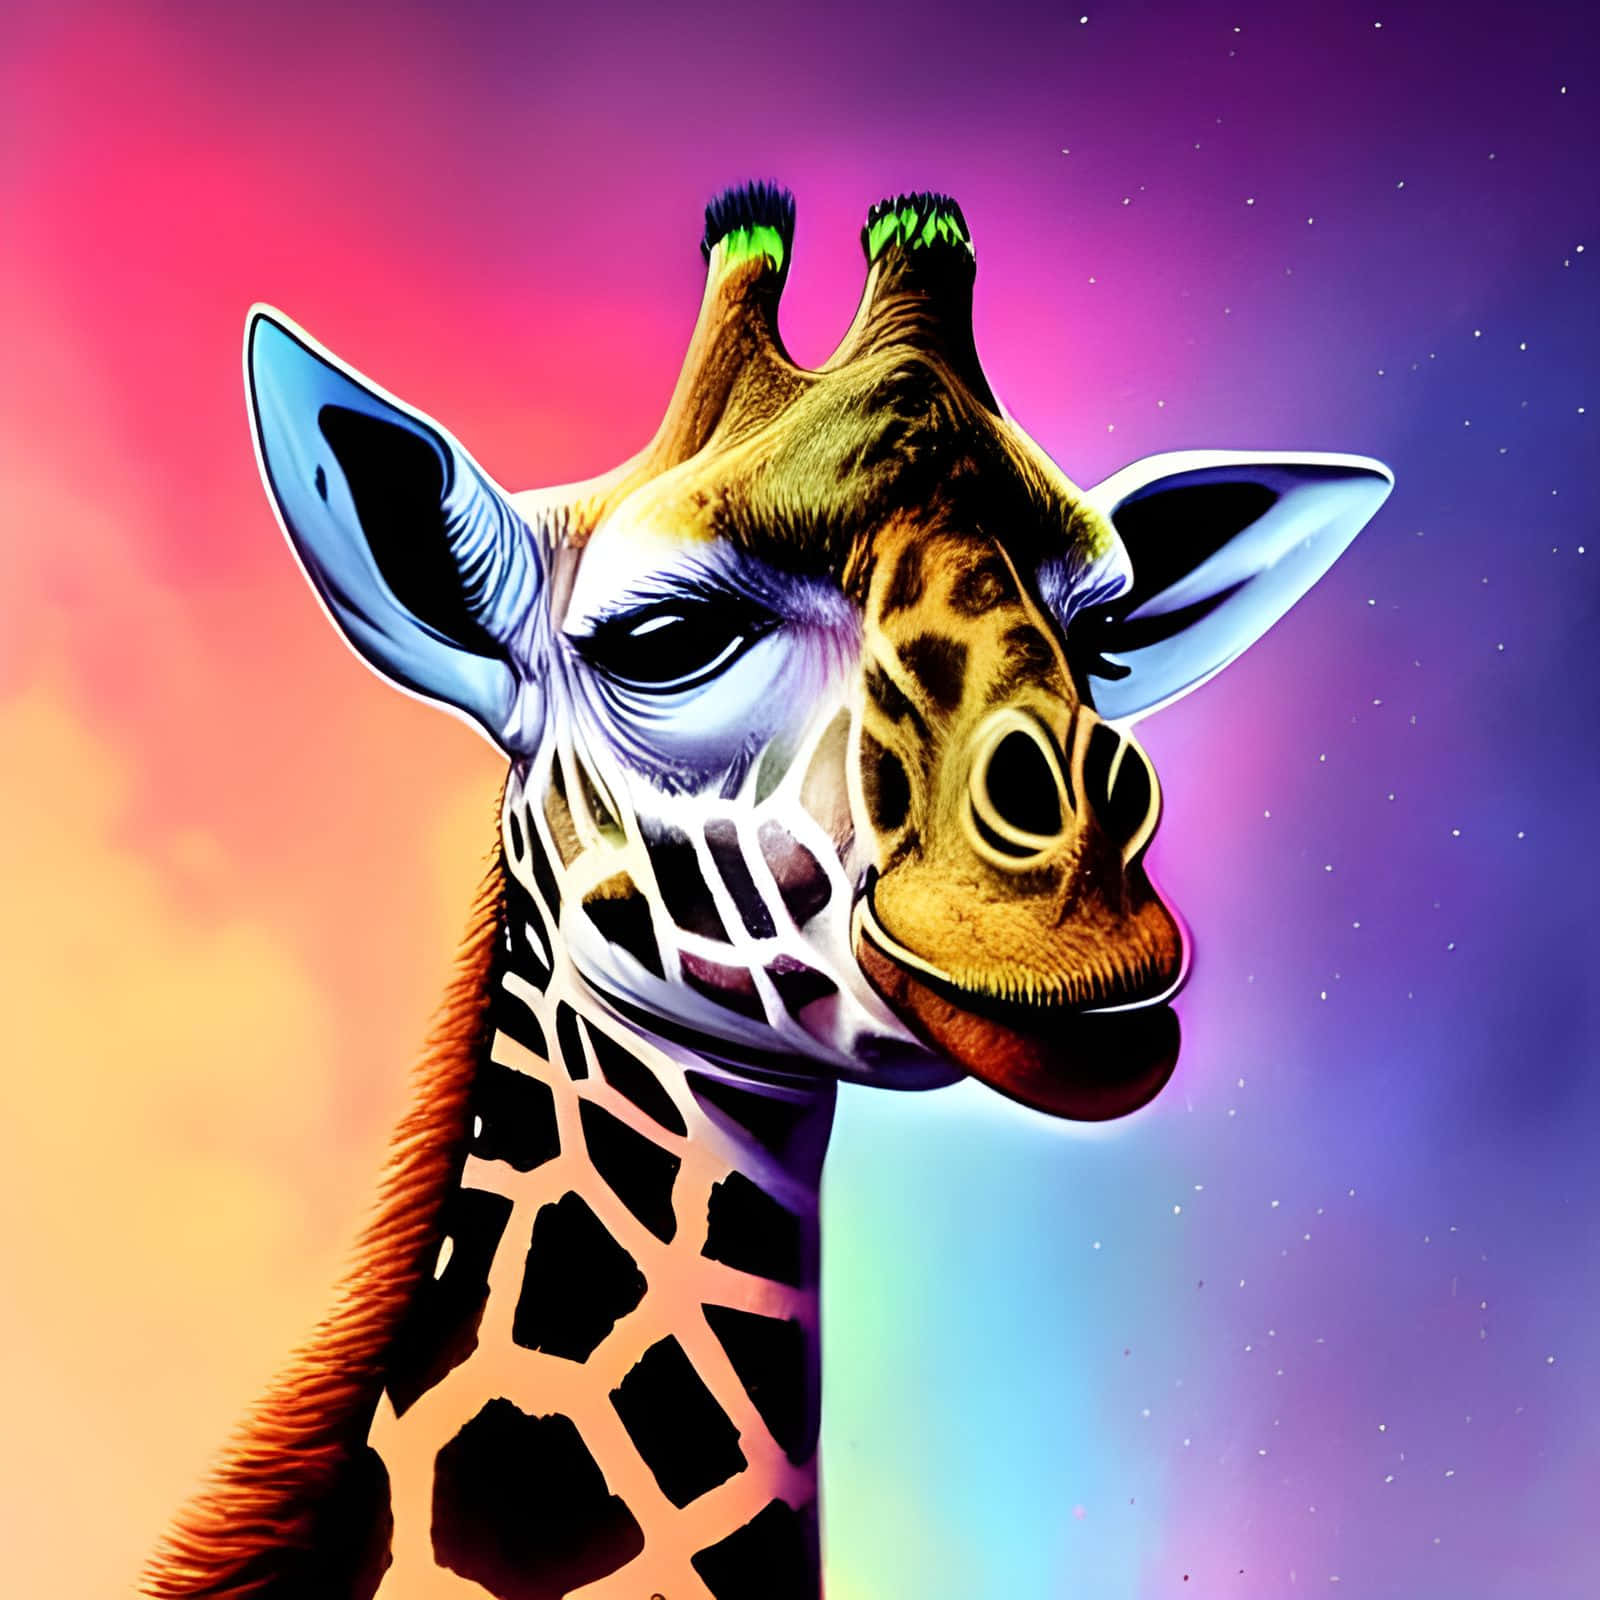 Digital Art Of A Cute Giraffe Wallpaper